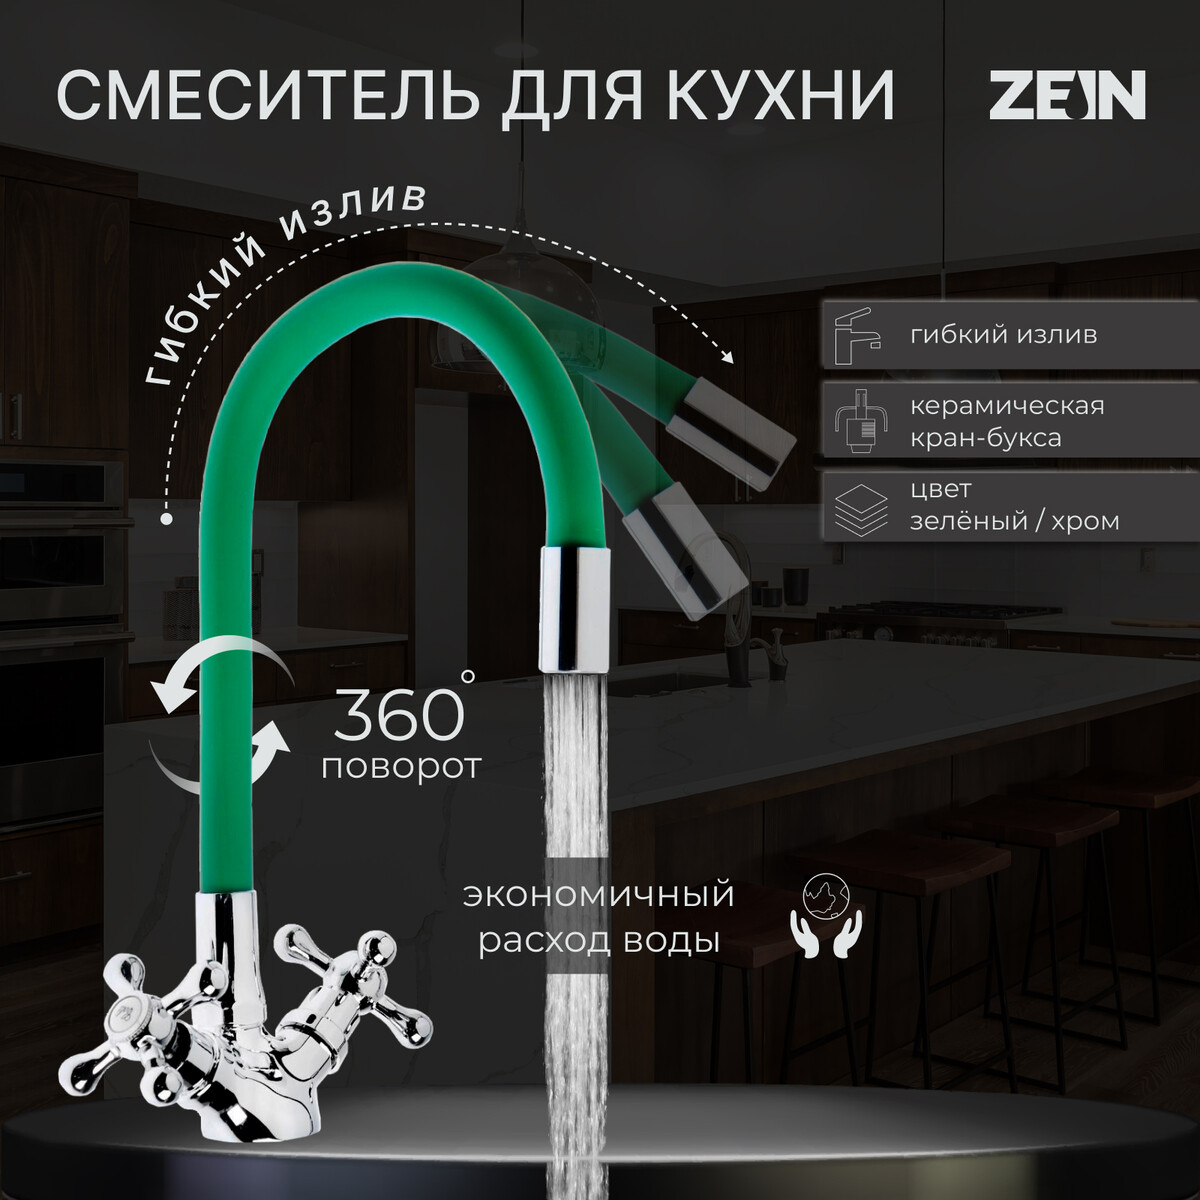 Смеситель для кухни zein z2102, двухвентильный, силиконовый излив, зеленый/хром